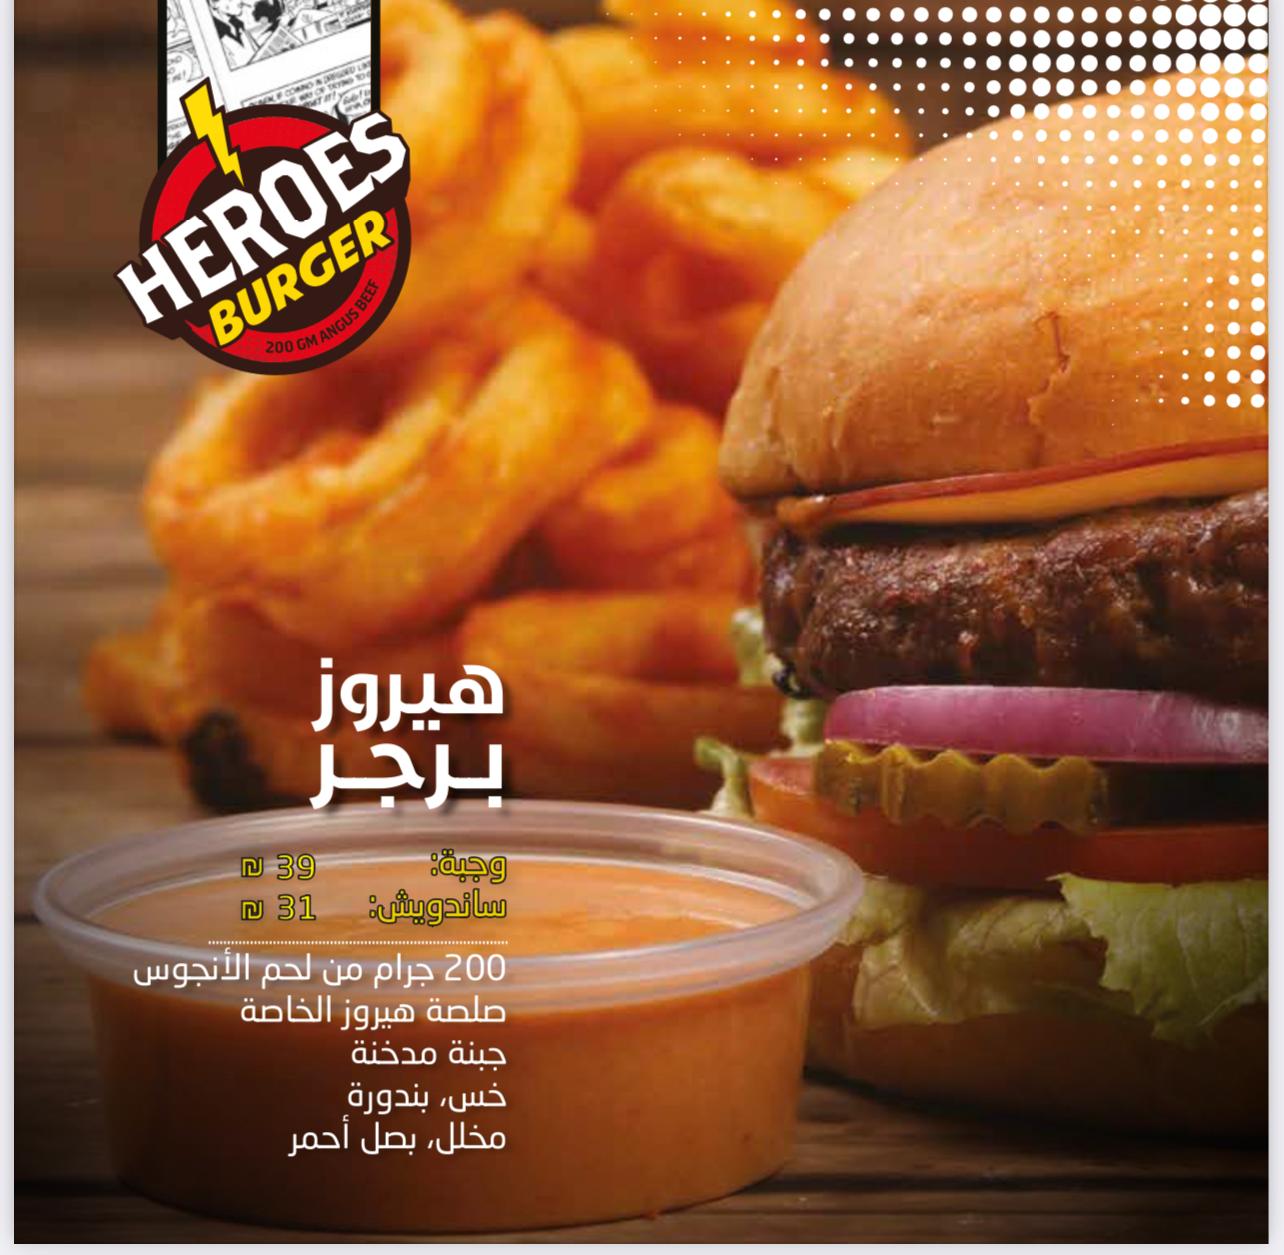 Heroes Burger